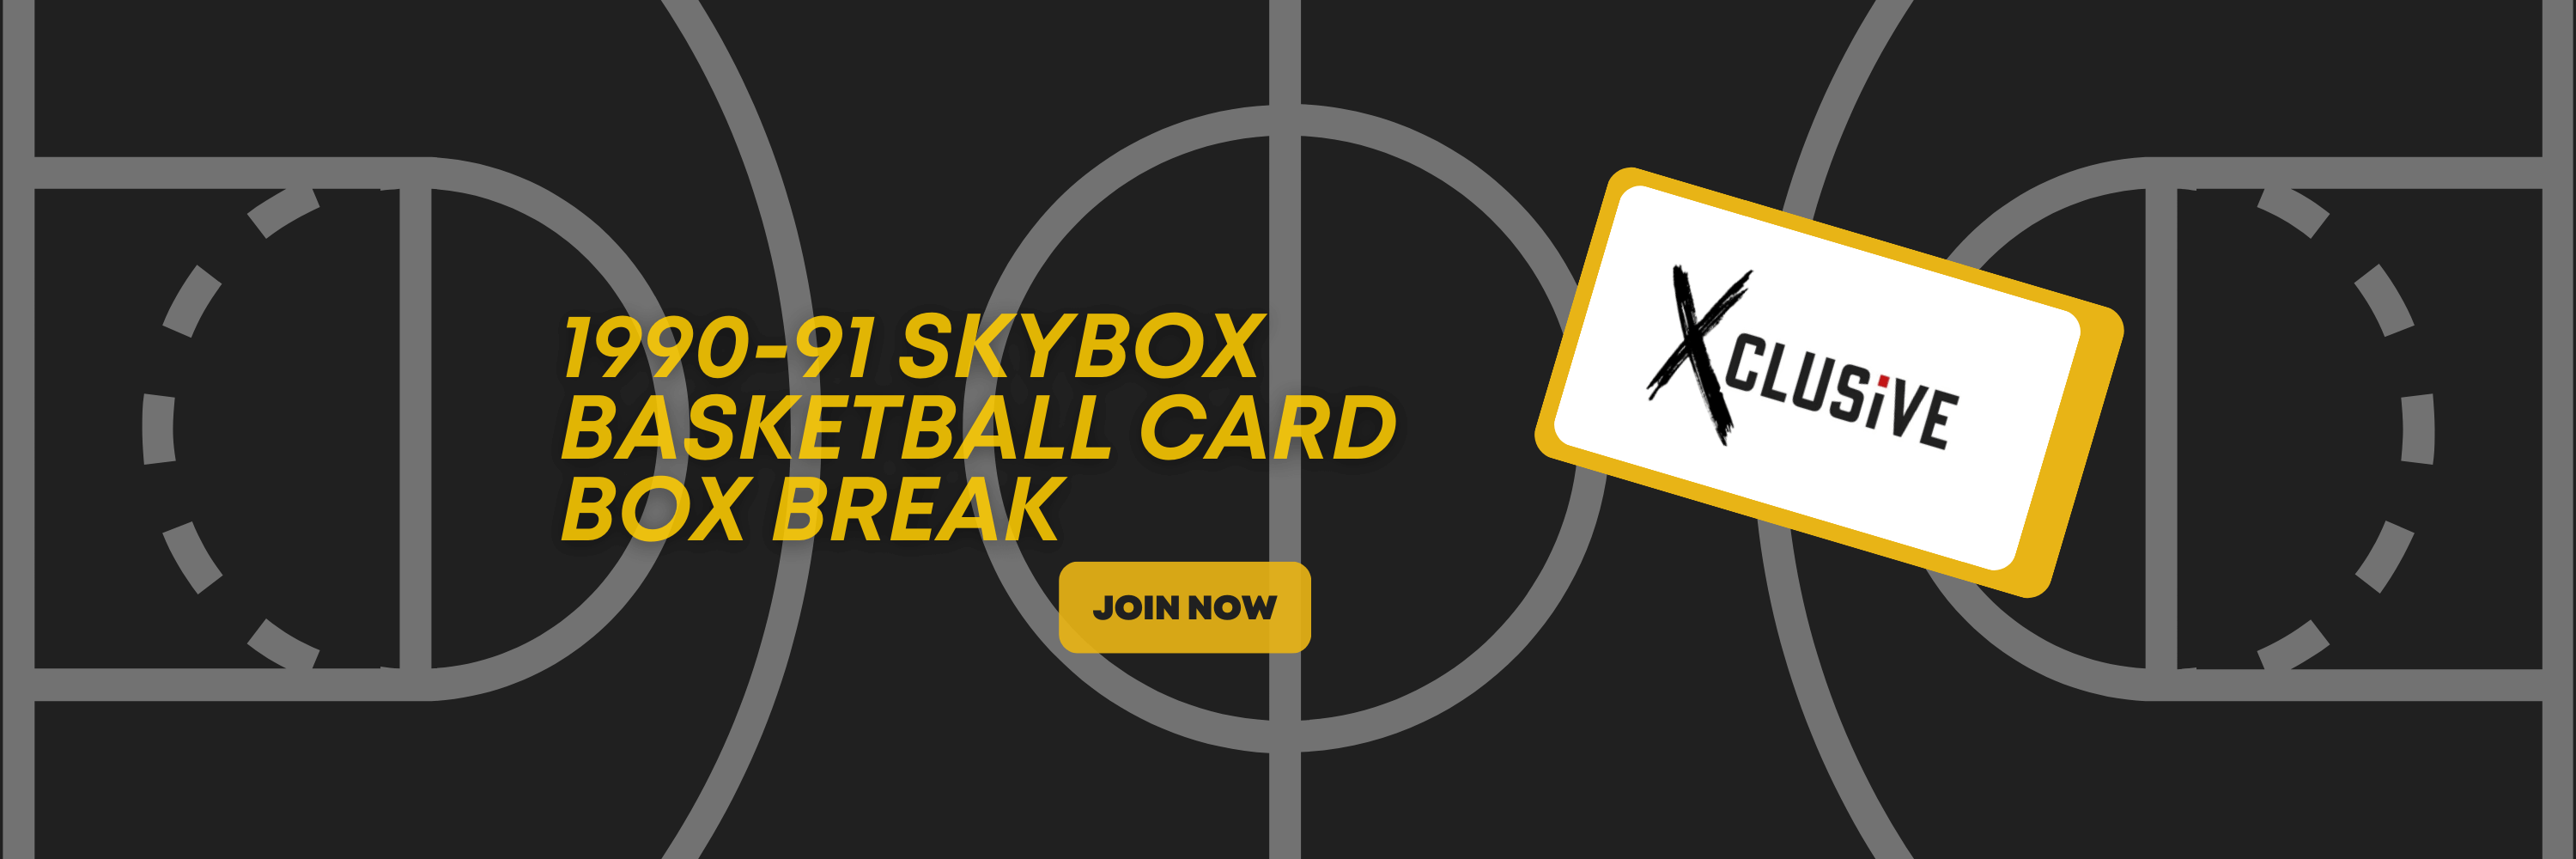 1990-91 Skybox Basketball Box Break: A Trip Down Memory Lane